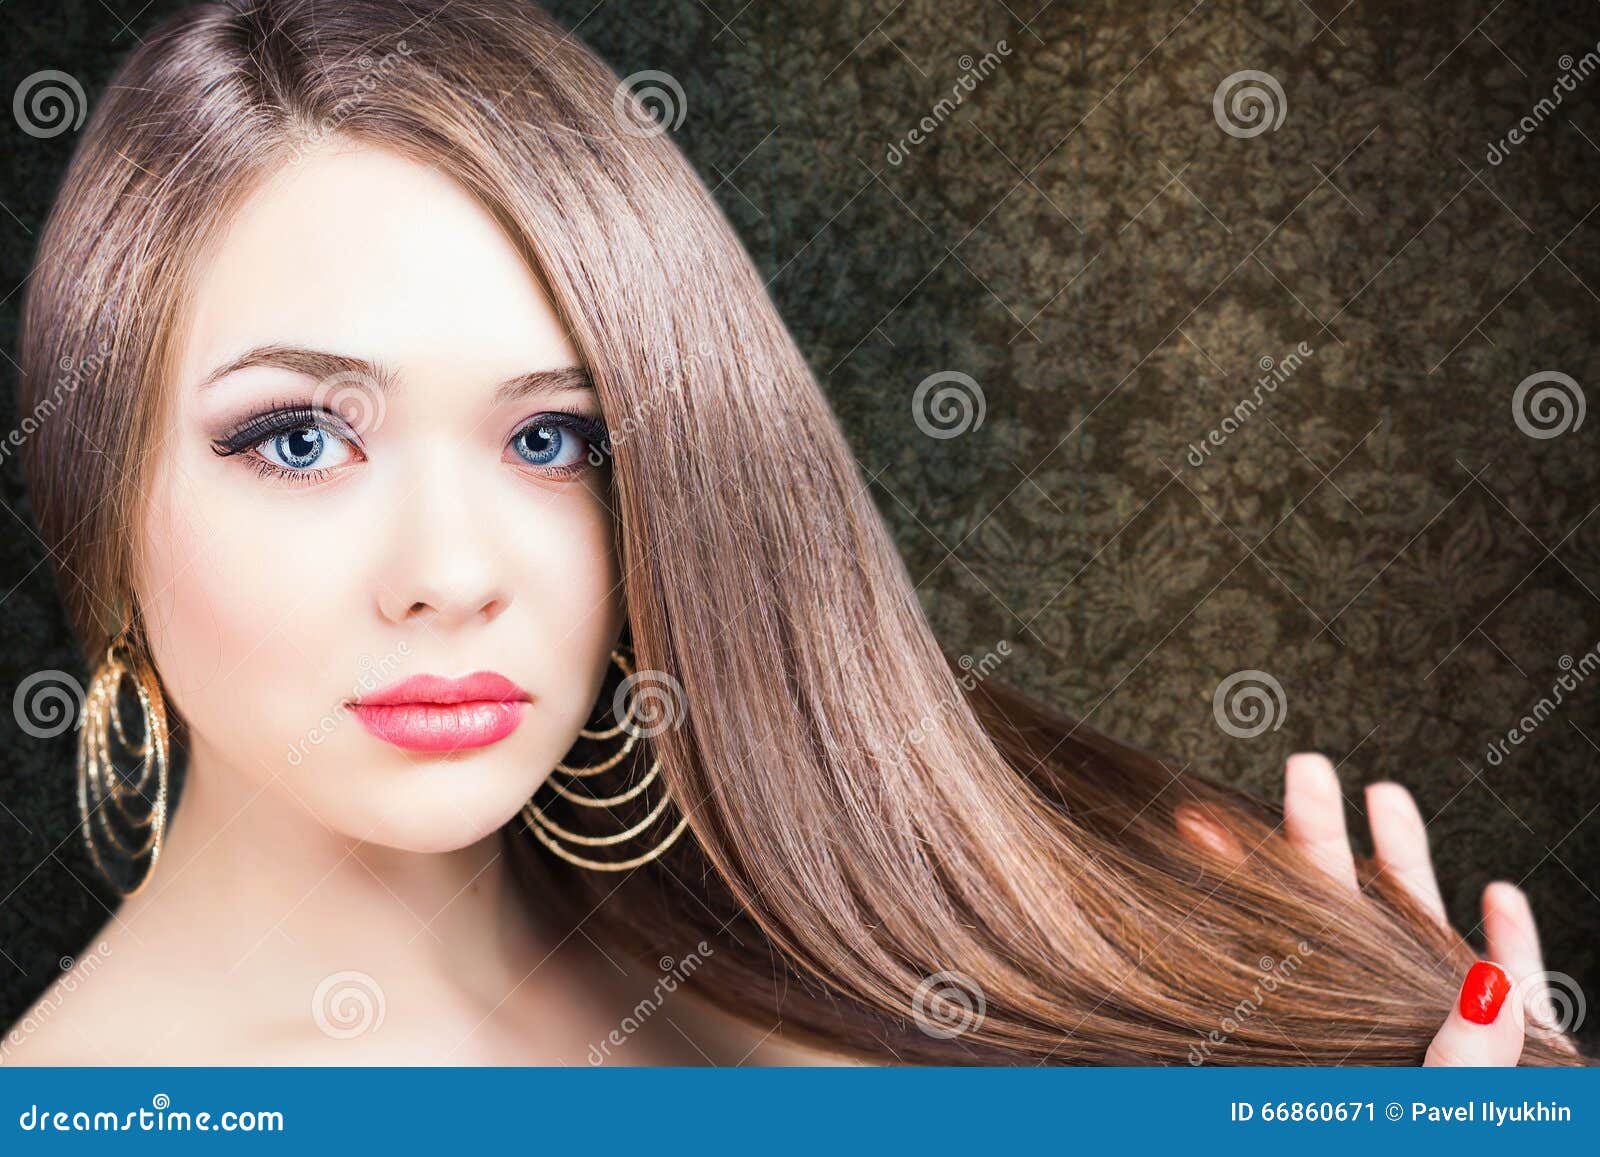 抽象横幅方式发型例证 美丽的头发长的平直的妇女图片